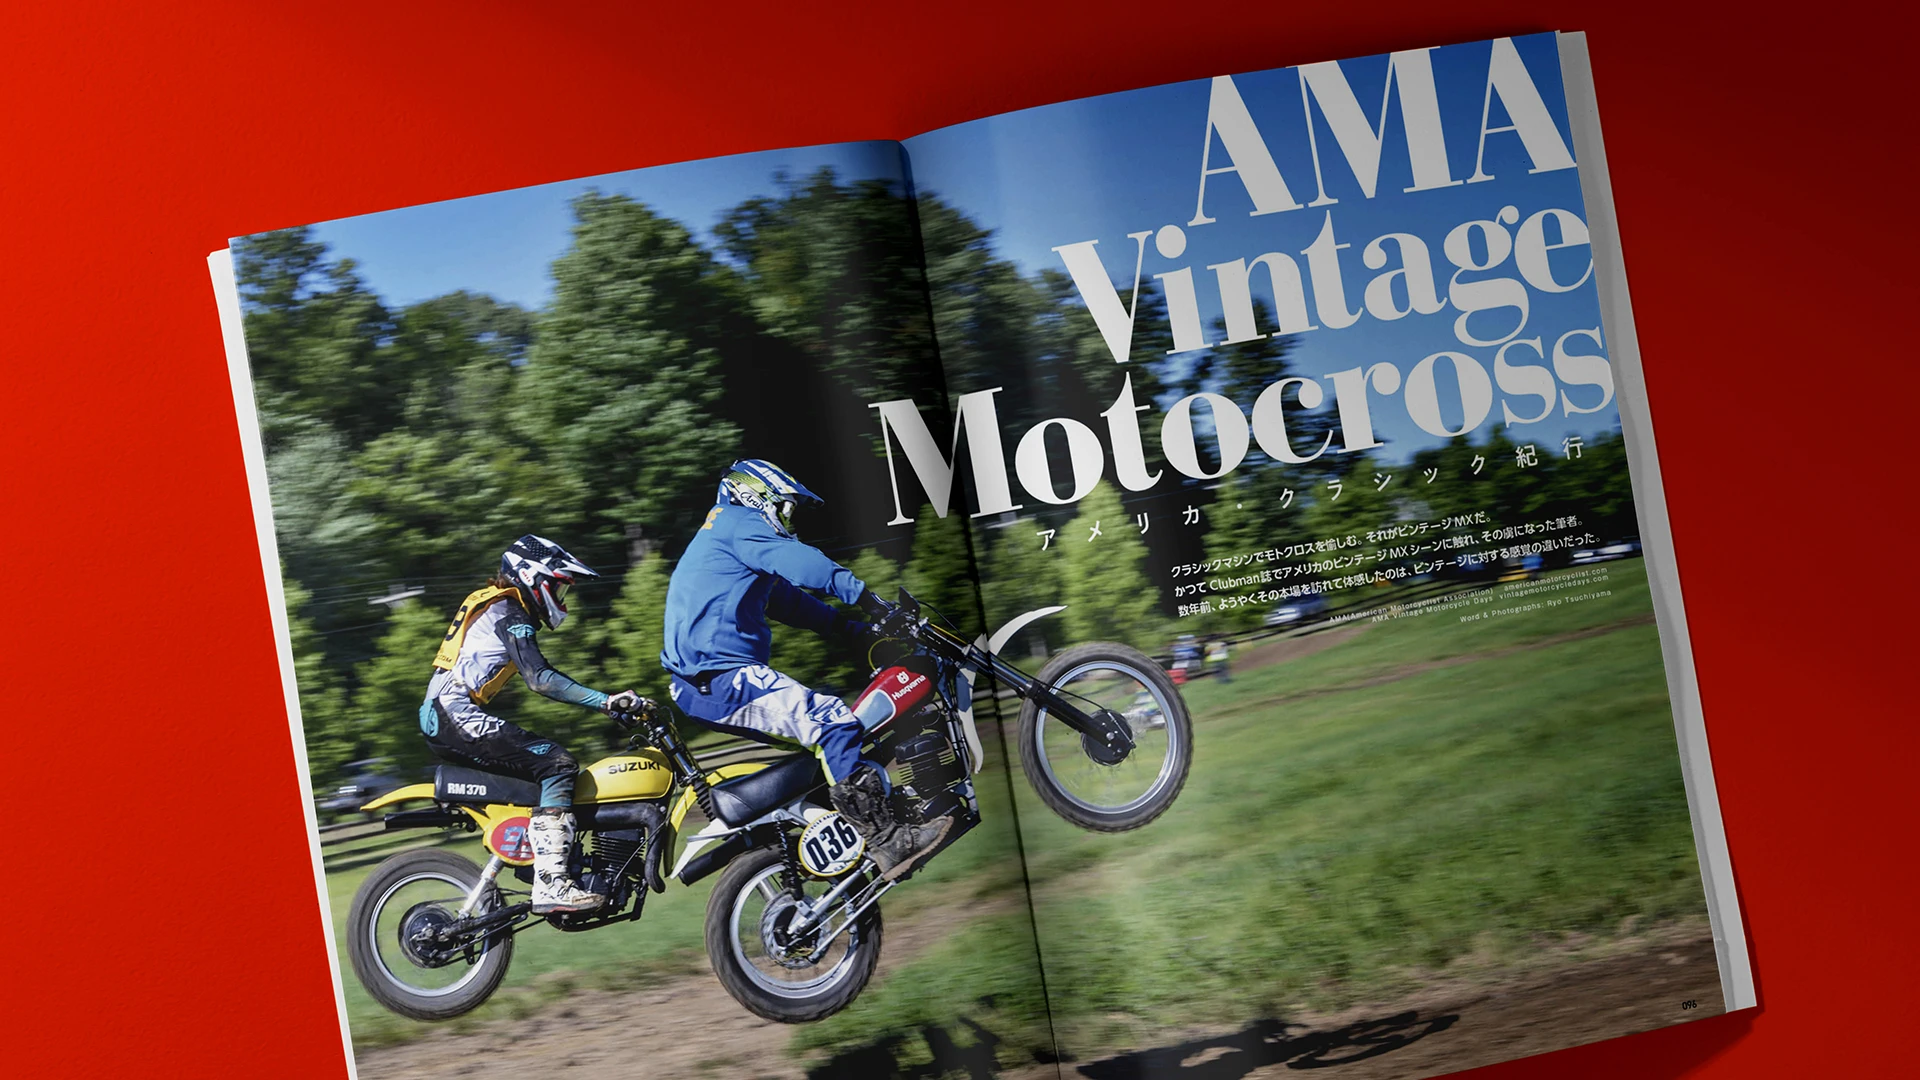 AMA Vintage Motocross